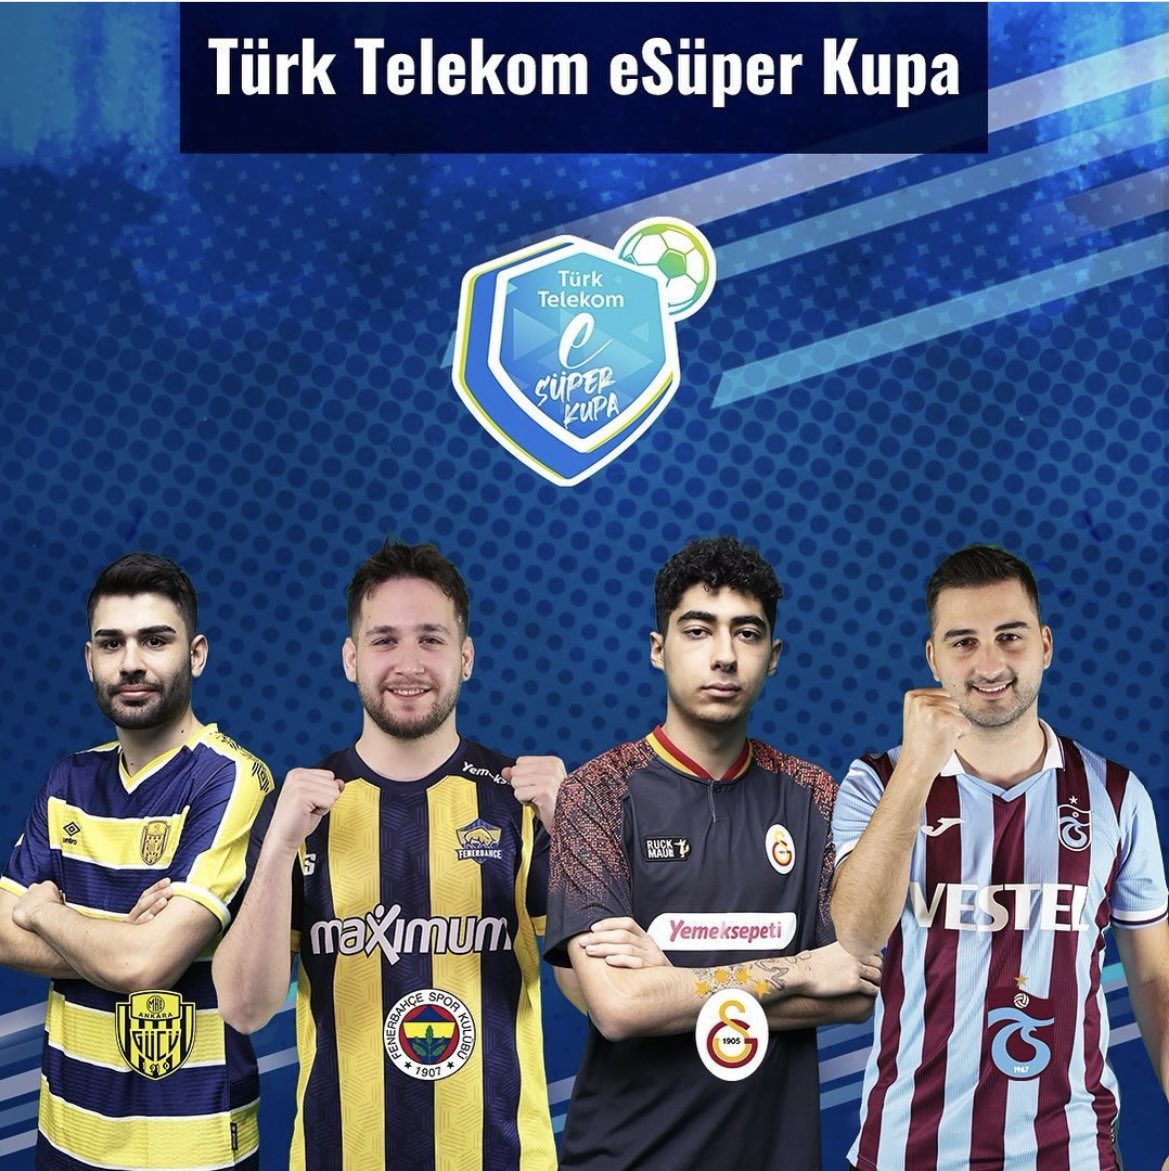 Türk Telekom eSüper Kupada da top 4 yaparak finallere katılma hakkı kazanan oyuncumuz Türkcan “Türko” Uluştaş’ı tebrik eder, pazar günü büyük finalde başarılar dileriz. 💛💙